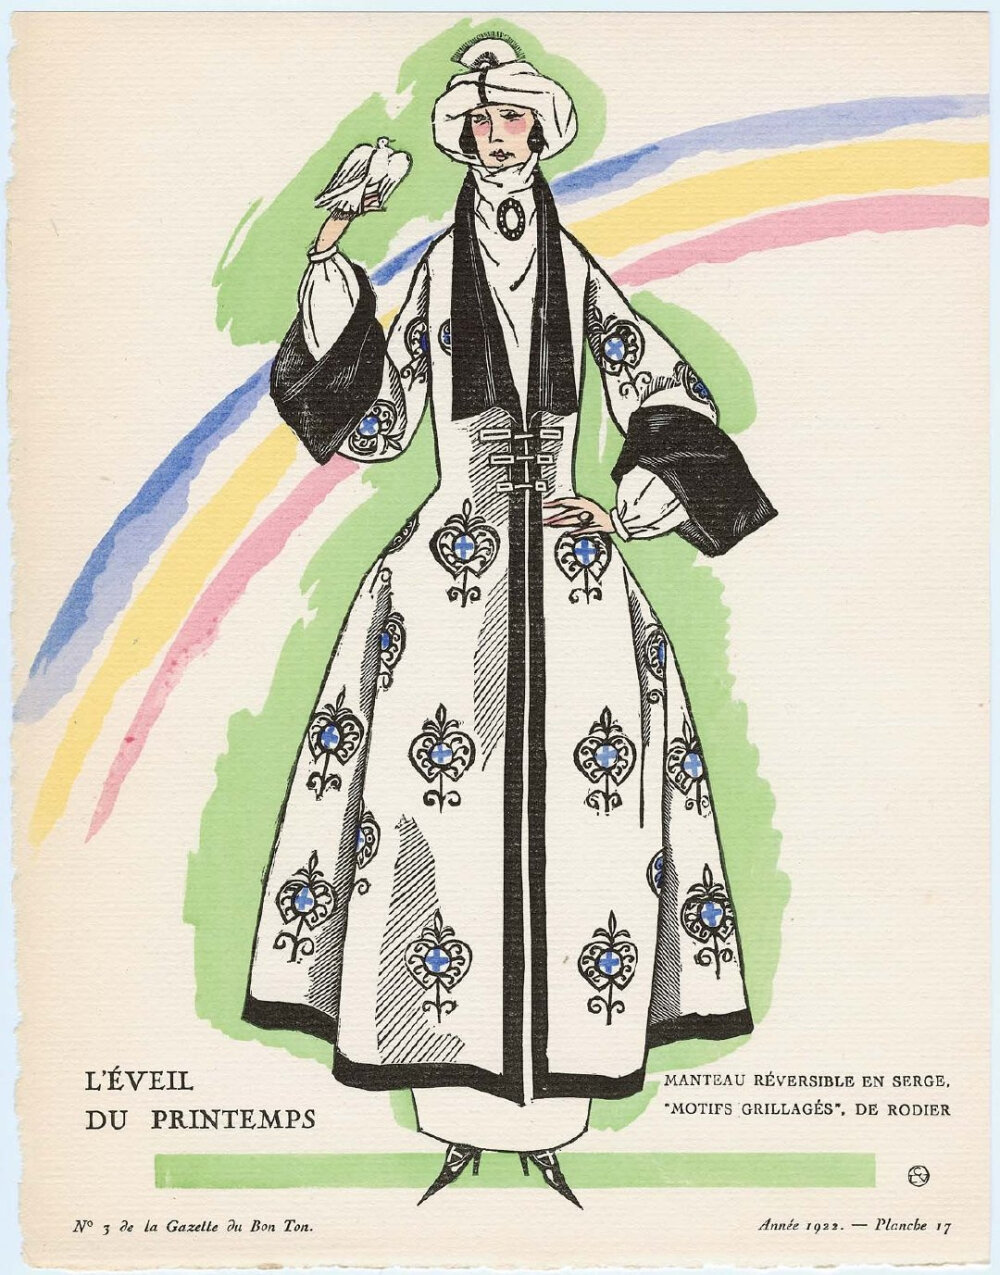 20世纪初的法国时尚杂志《Gazette du Bon Ton》，将1912年至1925年的服饰优雅魅力展现到极致。色彩饱满的绘画，描述了一个个特别的时尚场合，或是时兴的服饰珠宝搭配，Lanvin与House of Worth的高定服装也通过杂志，收获众多时尚女性的喜爱。从美好时代的野兽派、新艺术，到装饰艺术阶段，这本杂志展示了最具创意的法国。